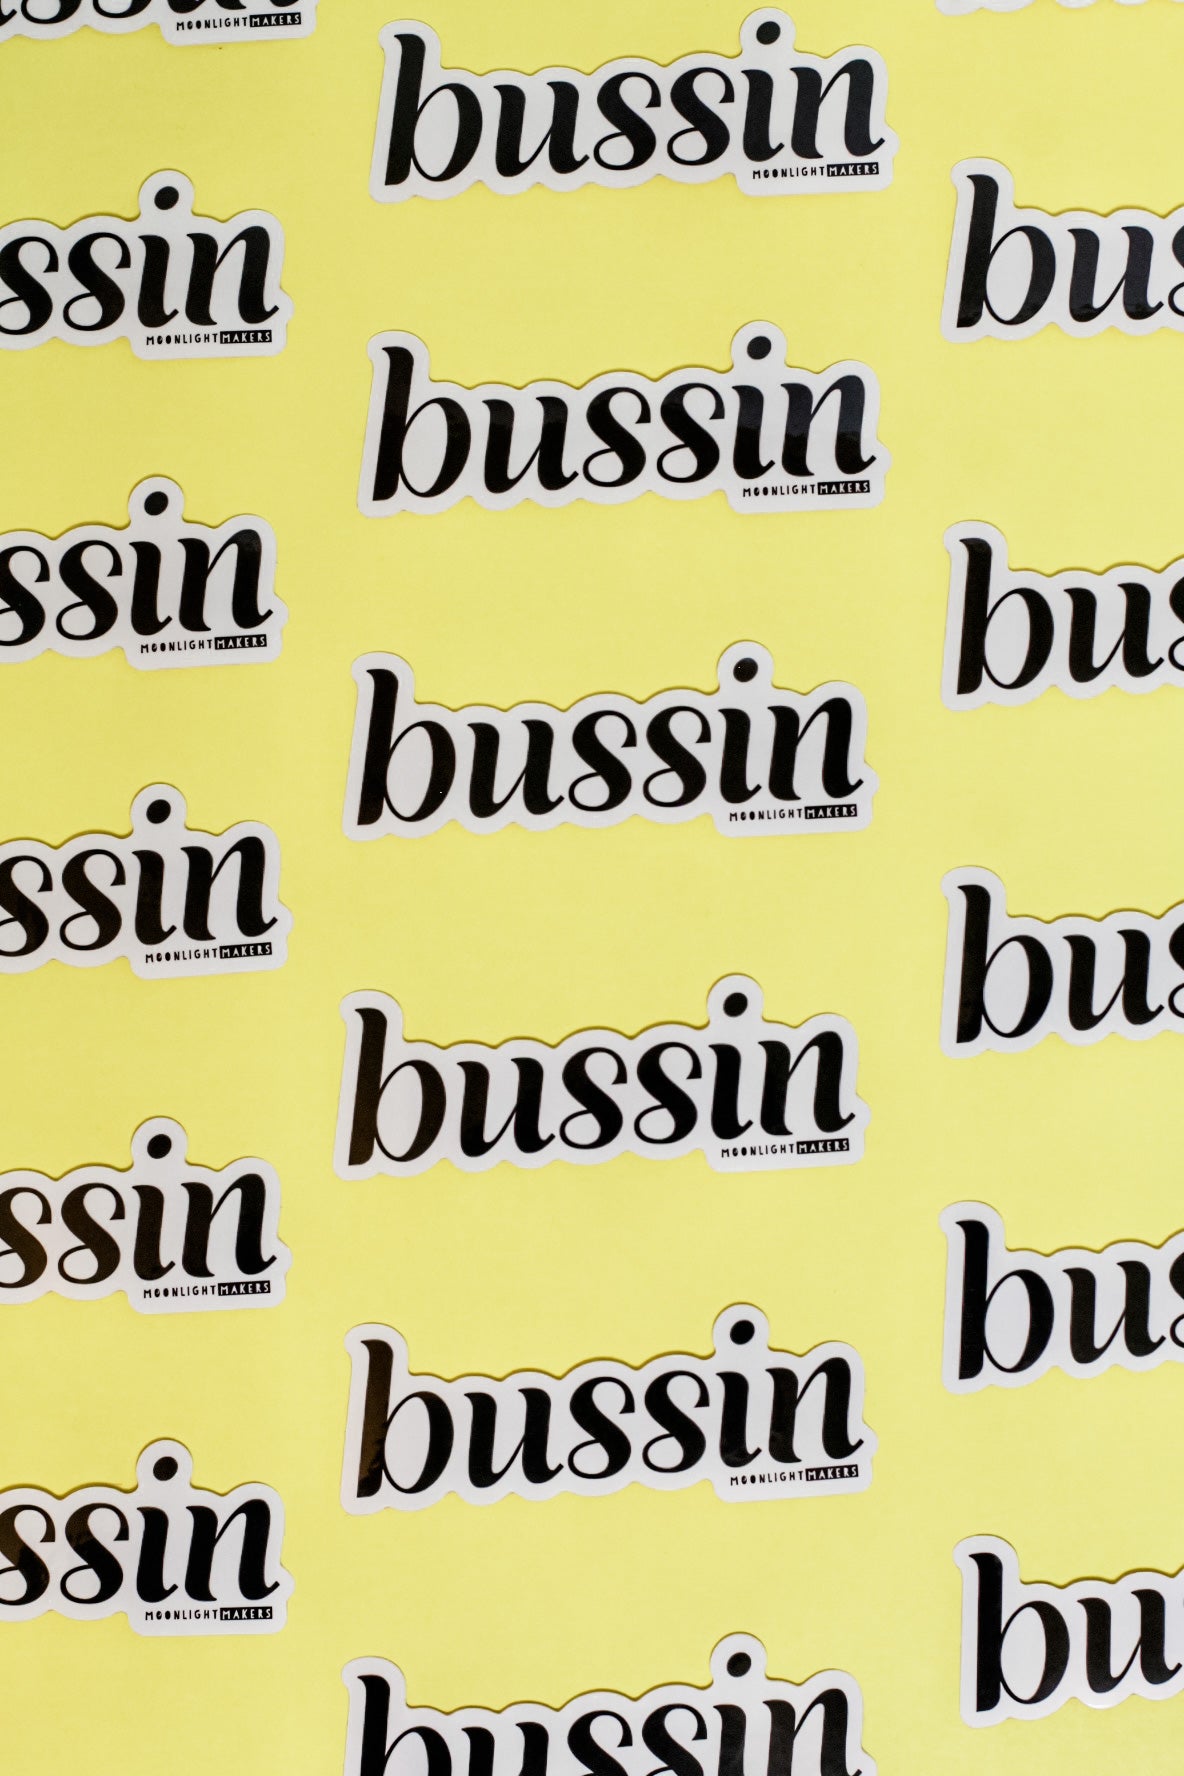 Bussin - Die Cut Sticker - MoonlightMakers